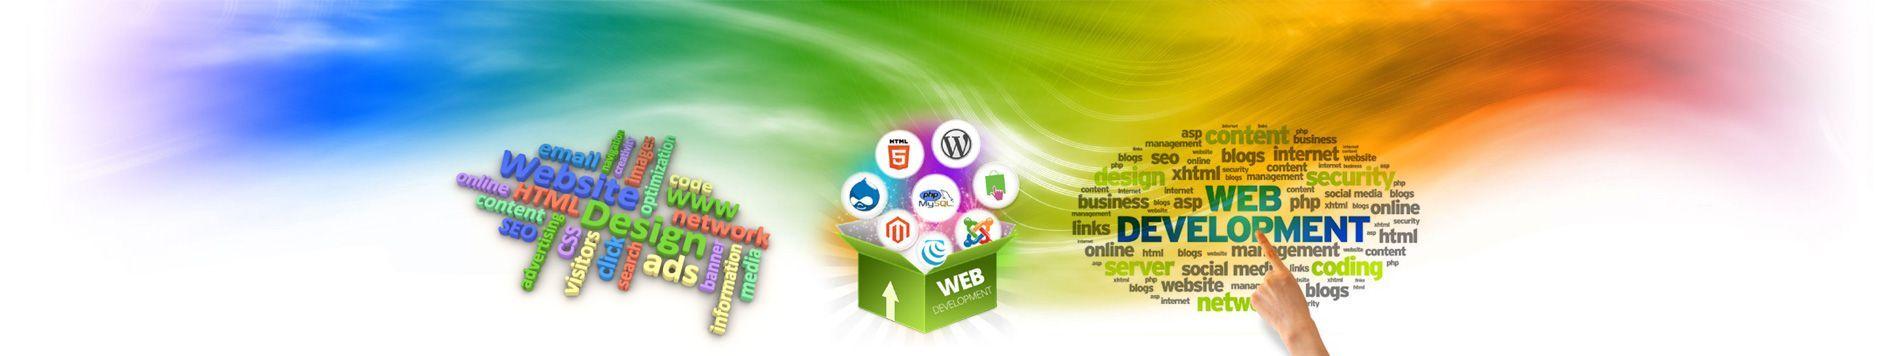 HTML Business Logo - Branding, Website Design, Mobile Application, Website development ...